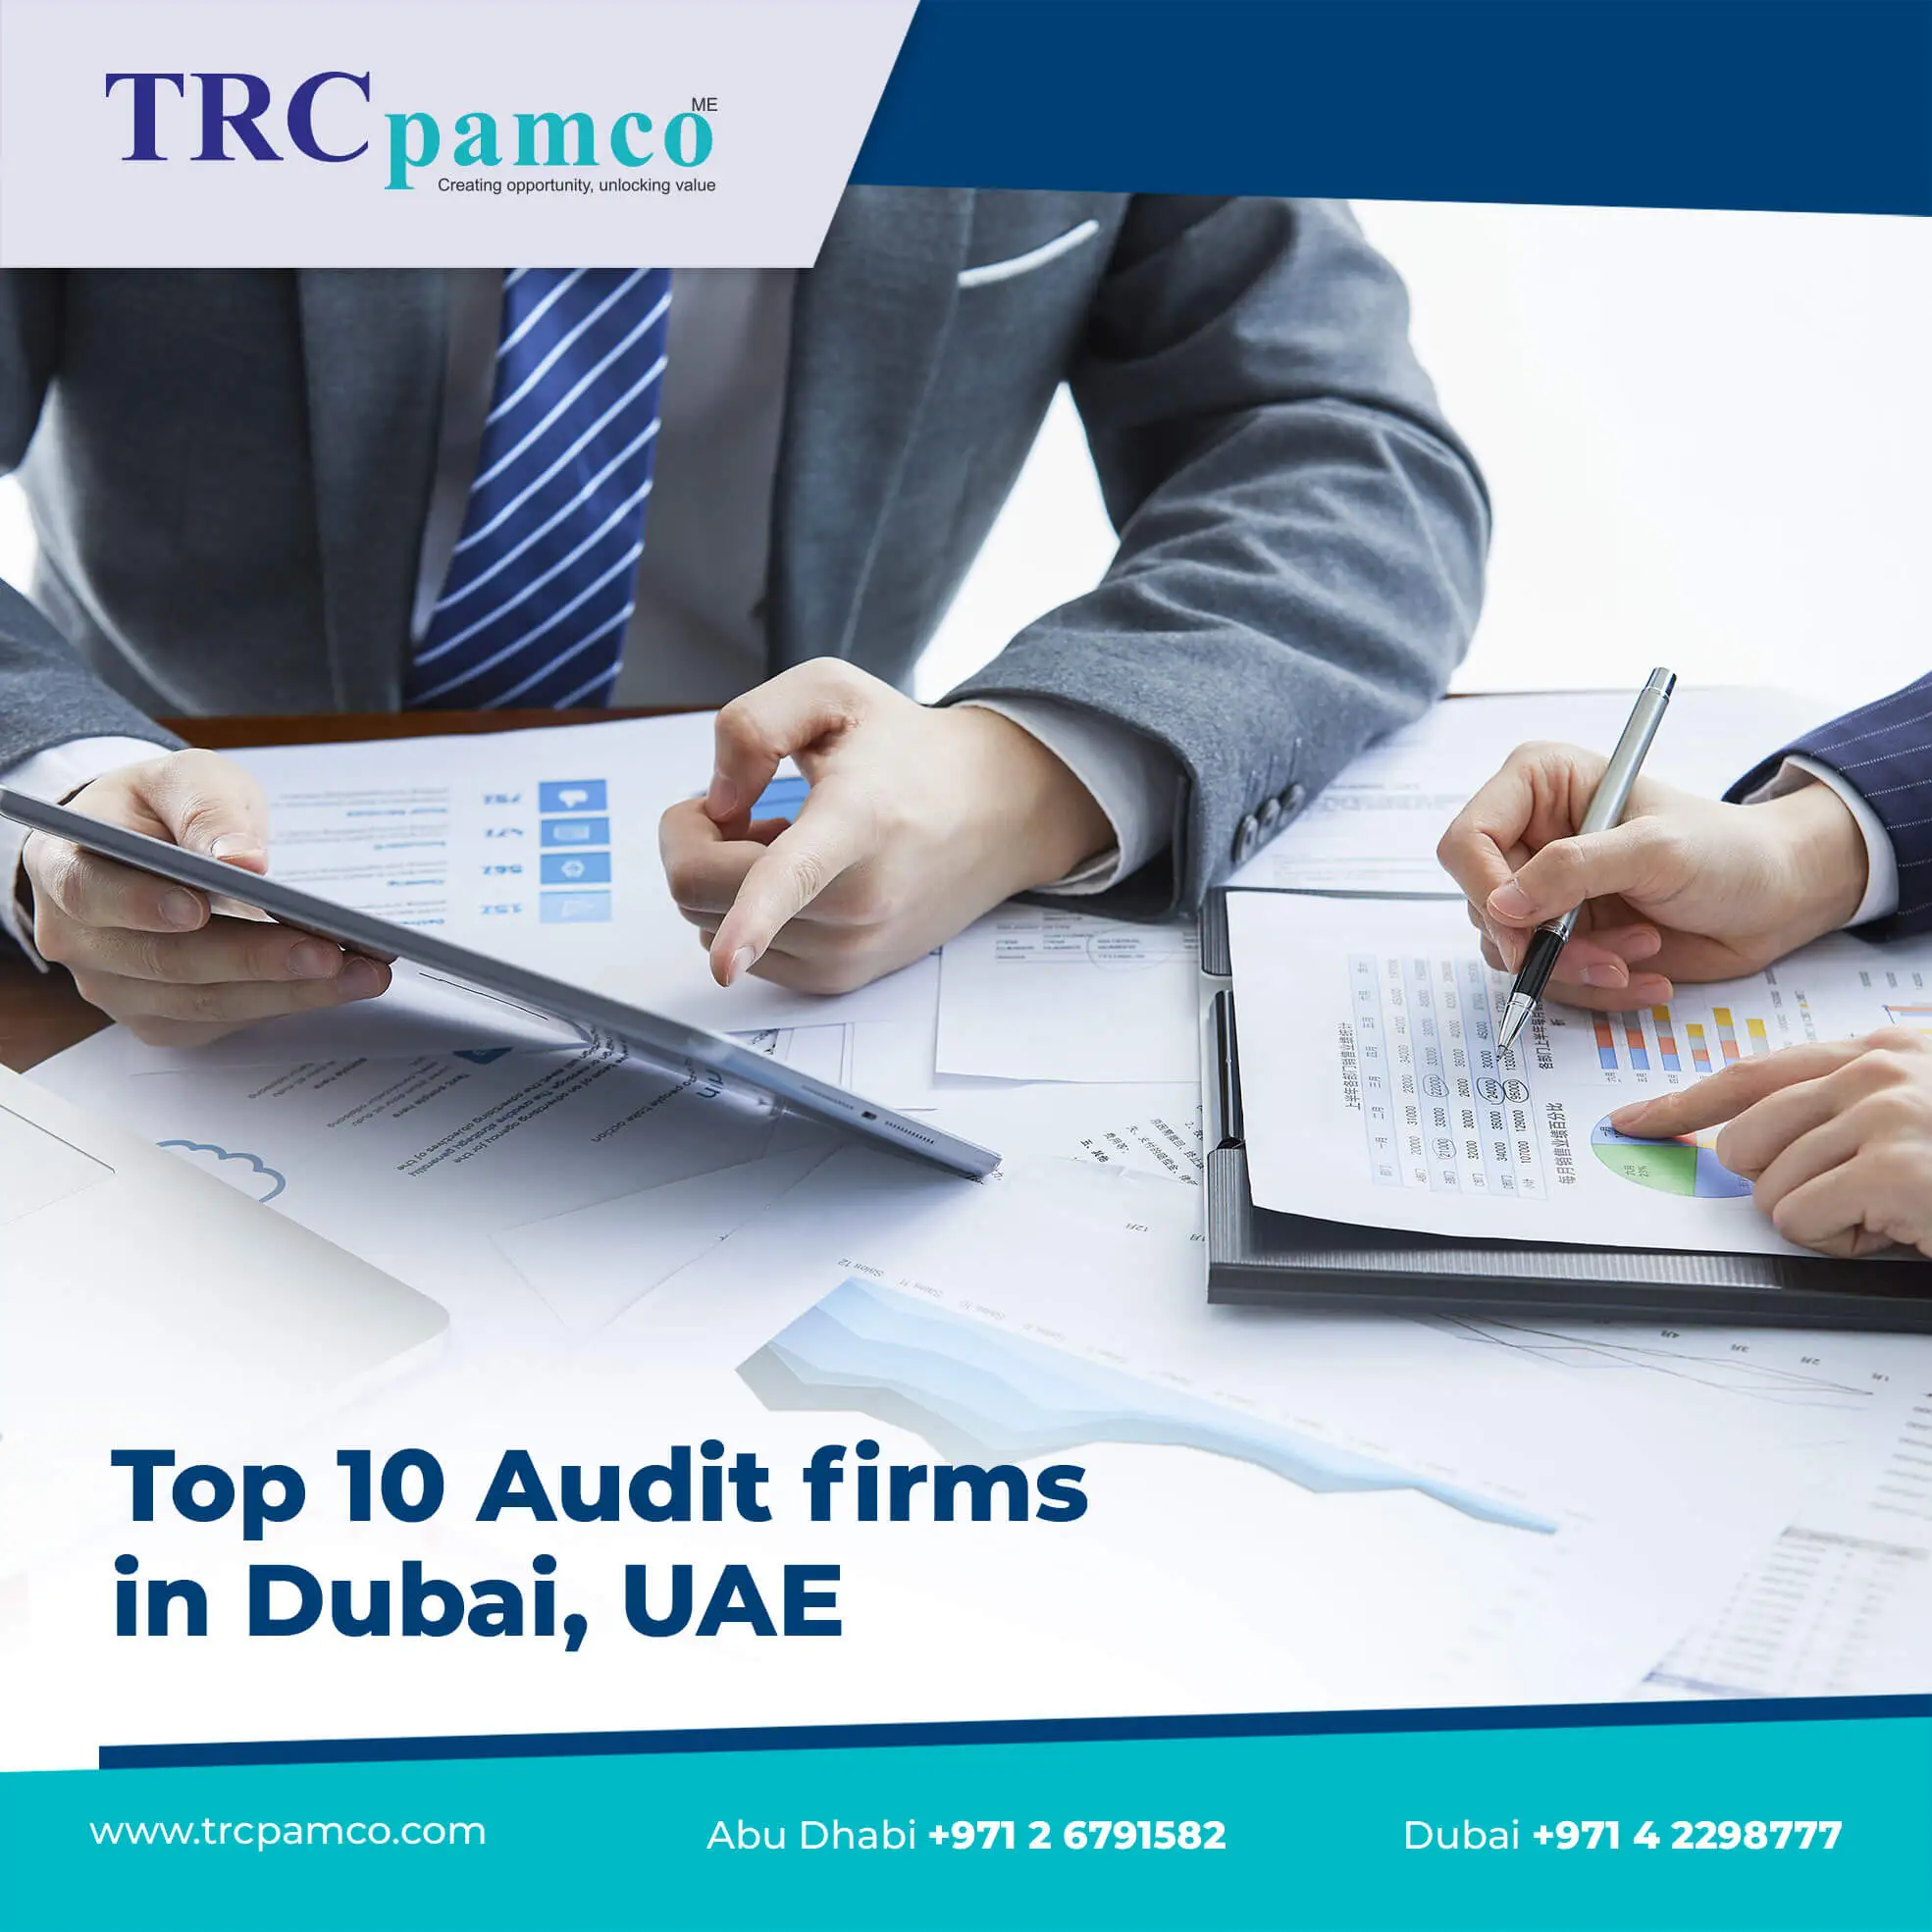 Audit firms in Dubai UAE